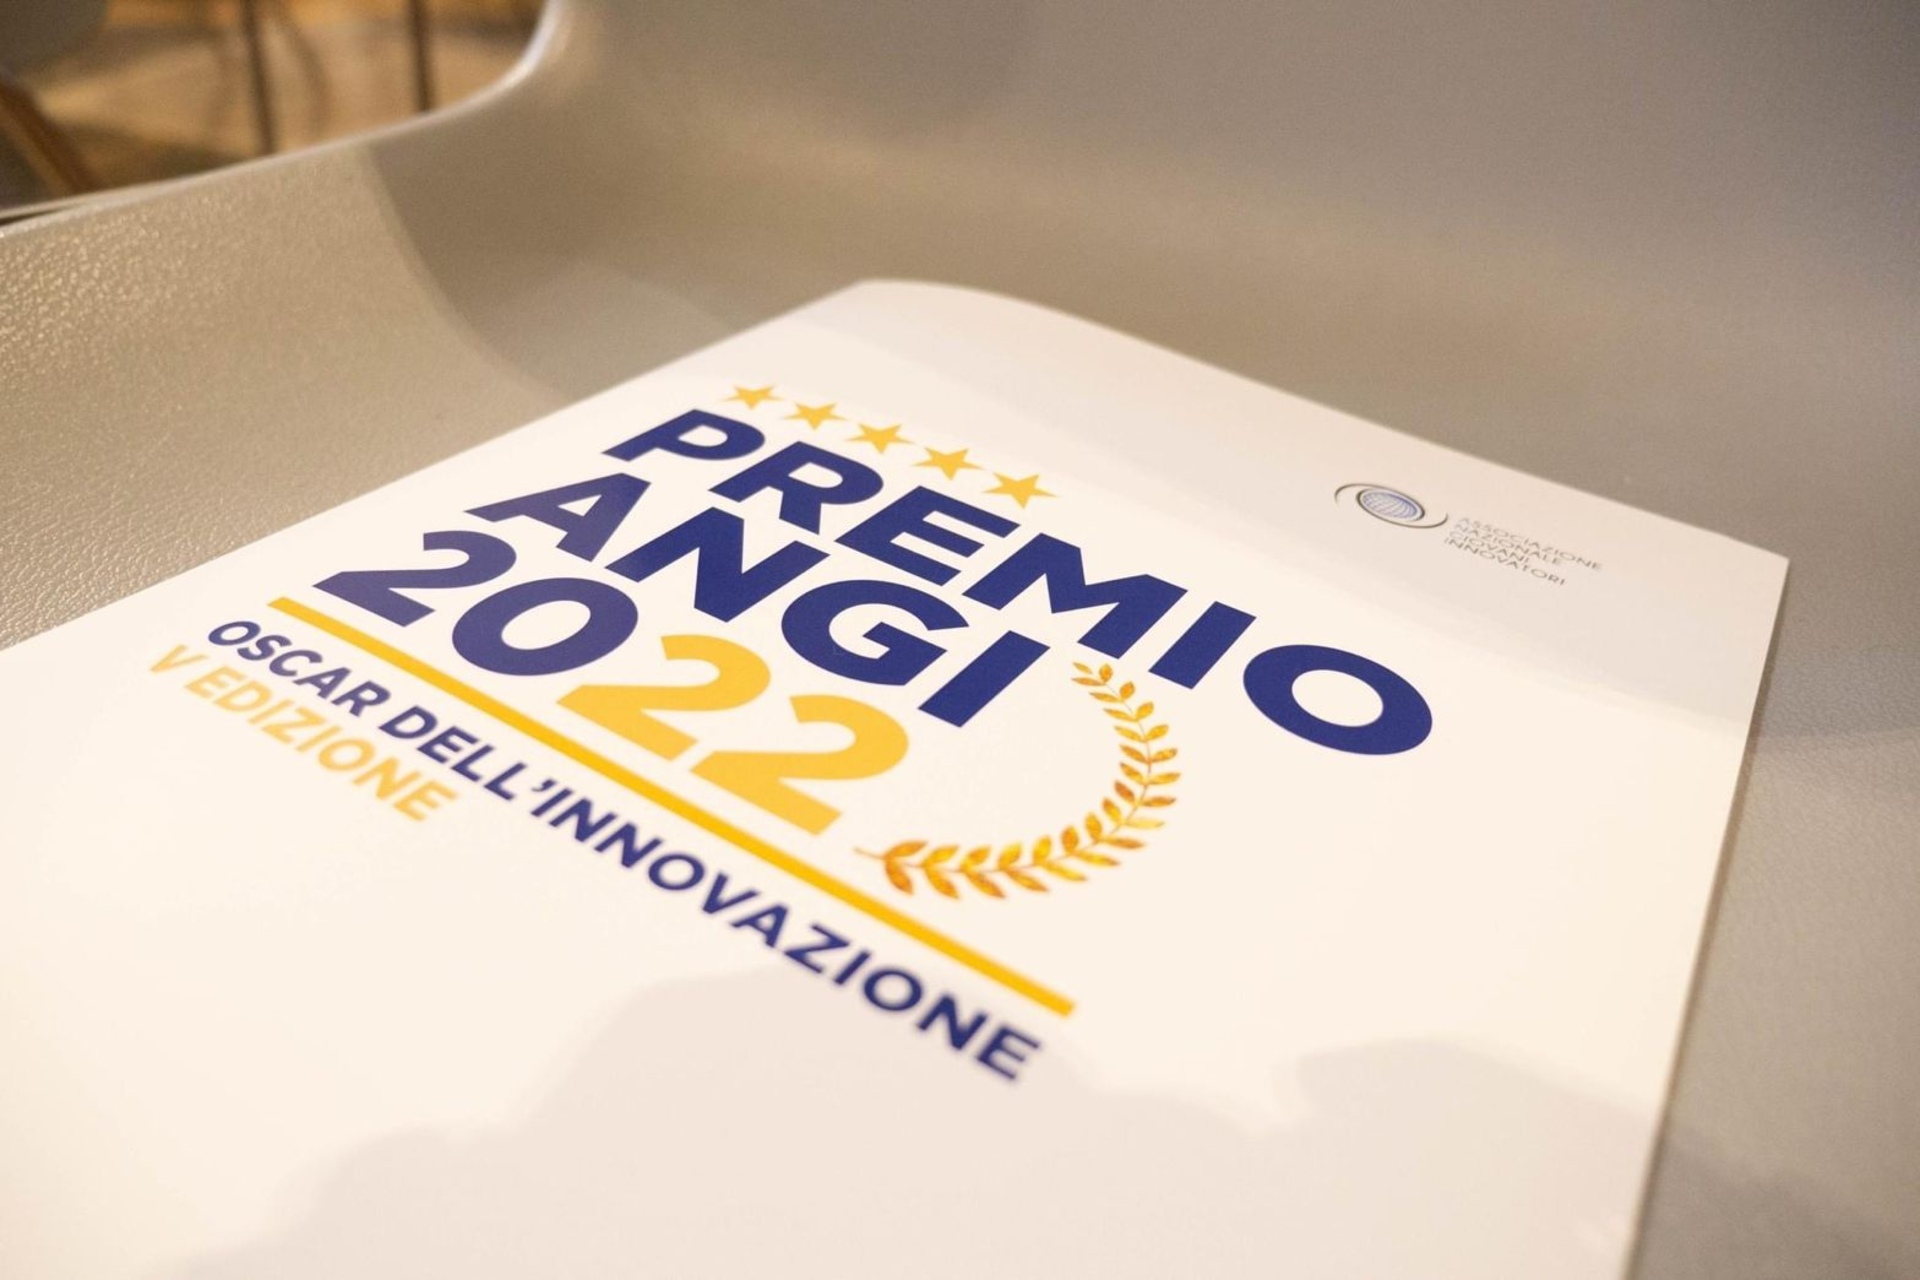 Ang ikalimang edisyon ng "ANGI Award - Oscar of Innovation" ay magaganap sa Ara Pacis sa Roma sa Disyembre 2022, XNUMX